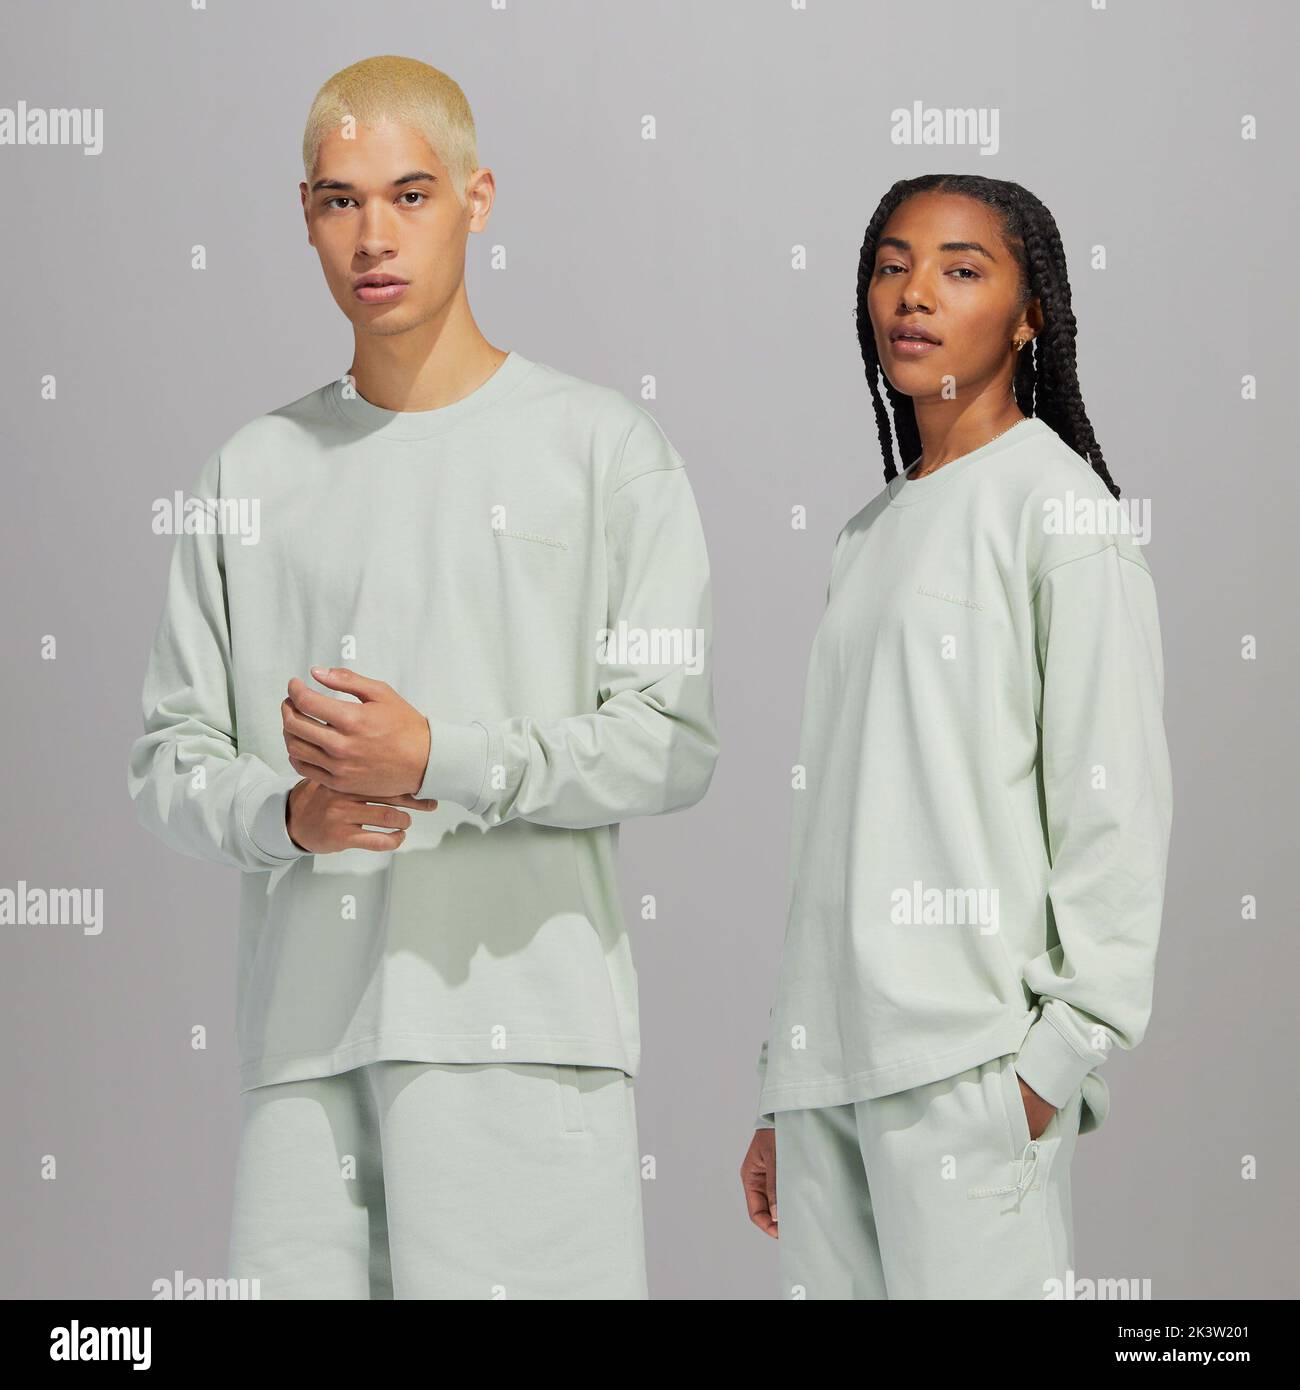 Justo antes de la temporada de otoño, adidas Originals y Pharrell a lanzar una amplia gama de nuevos colores de colección Humanrace Premium Basics, neutral en cuanto a género.